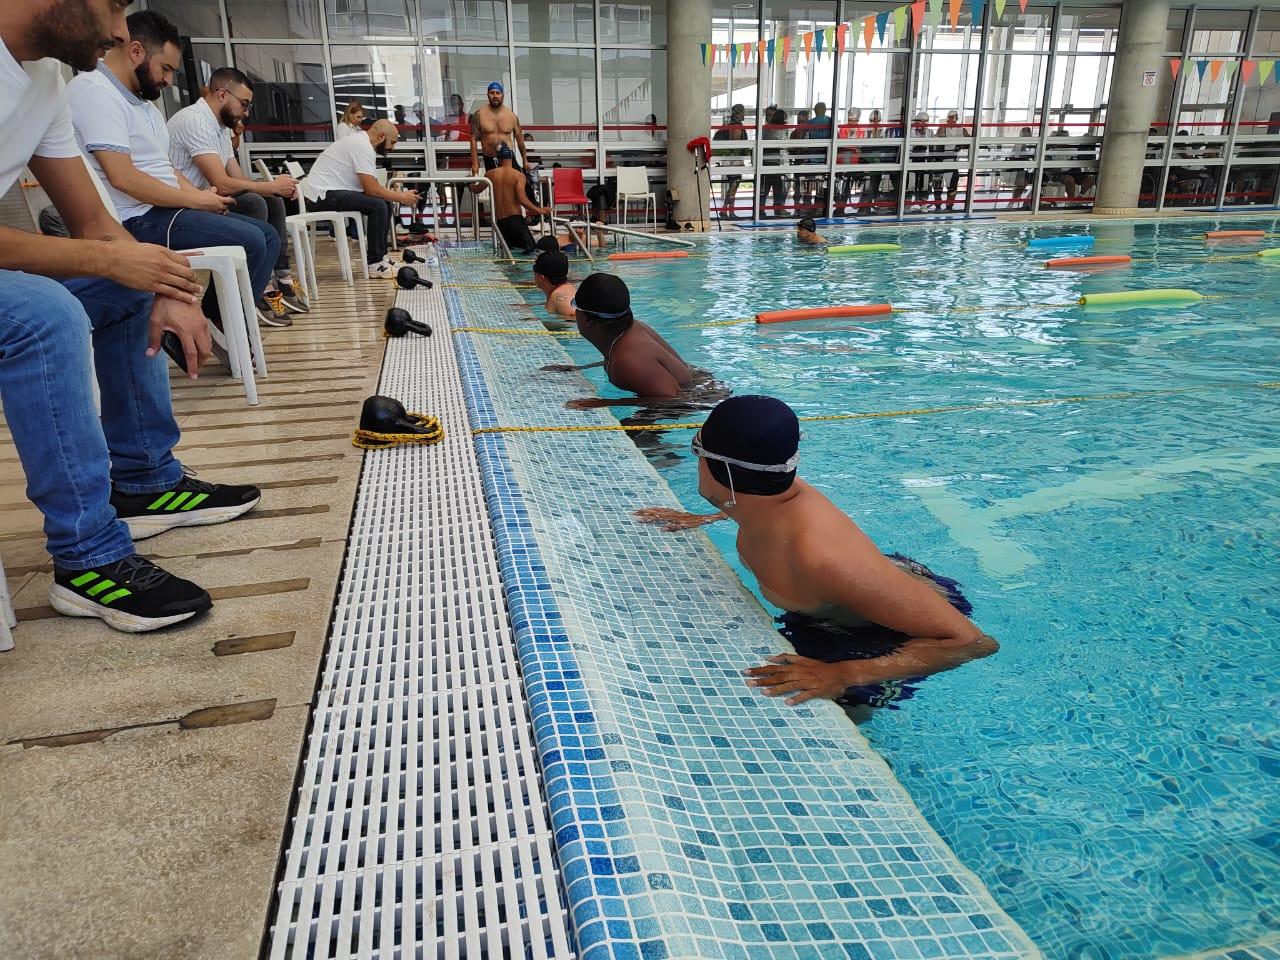 101 veteranos midieron fuerzas en natación en juegos clasificatorios Invictus